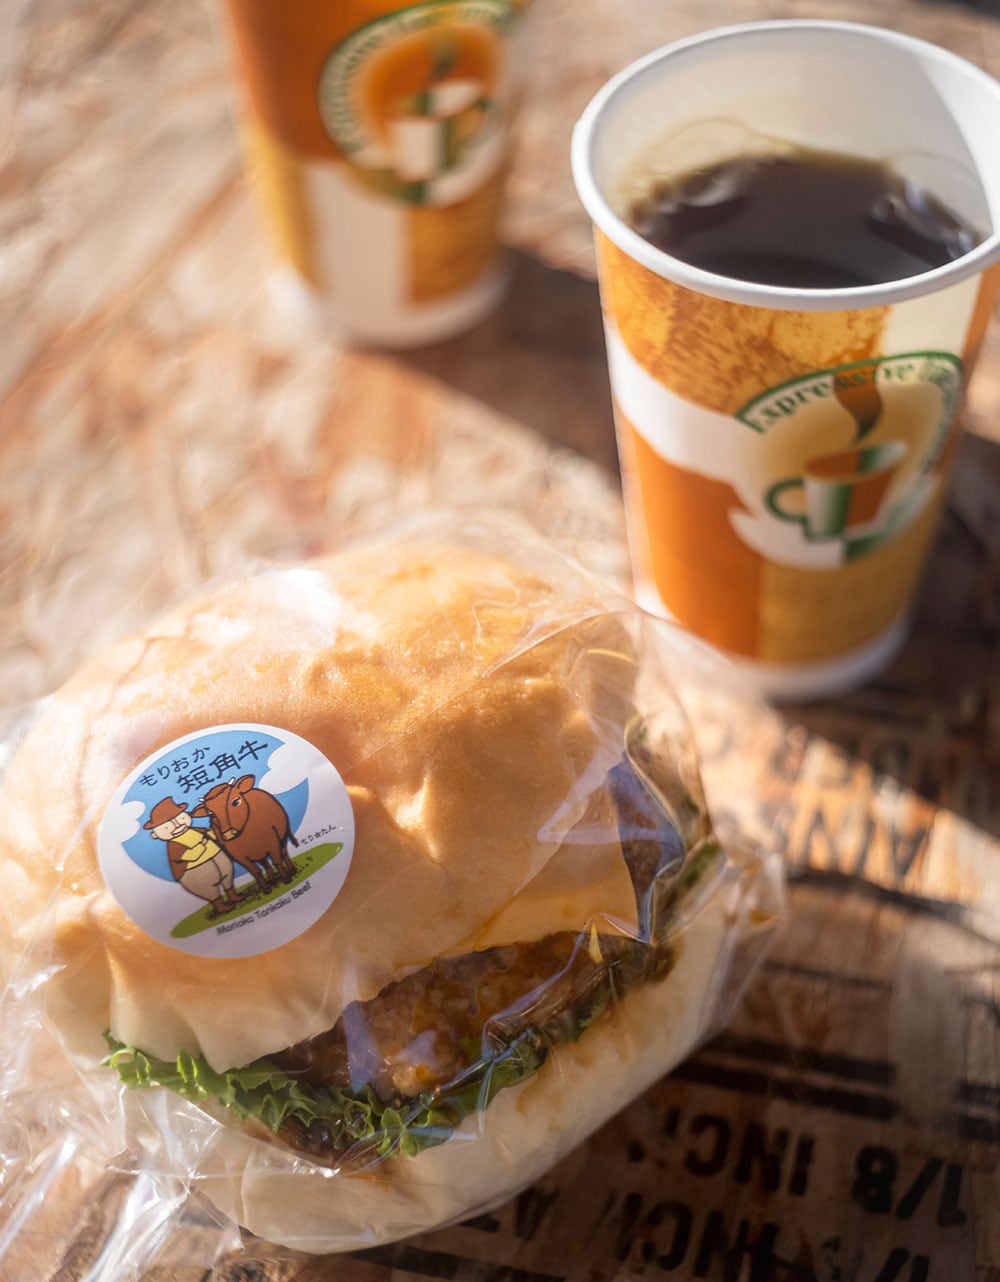 「マドカ珈琲店」の“モーニングコーヒー” 150円と、盛岡のソウルフードどして地元の人から愛されている、コッペパンの専門店「福田パン」のパンを使った短角牛のハンバーガー 500円。